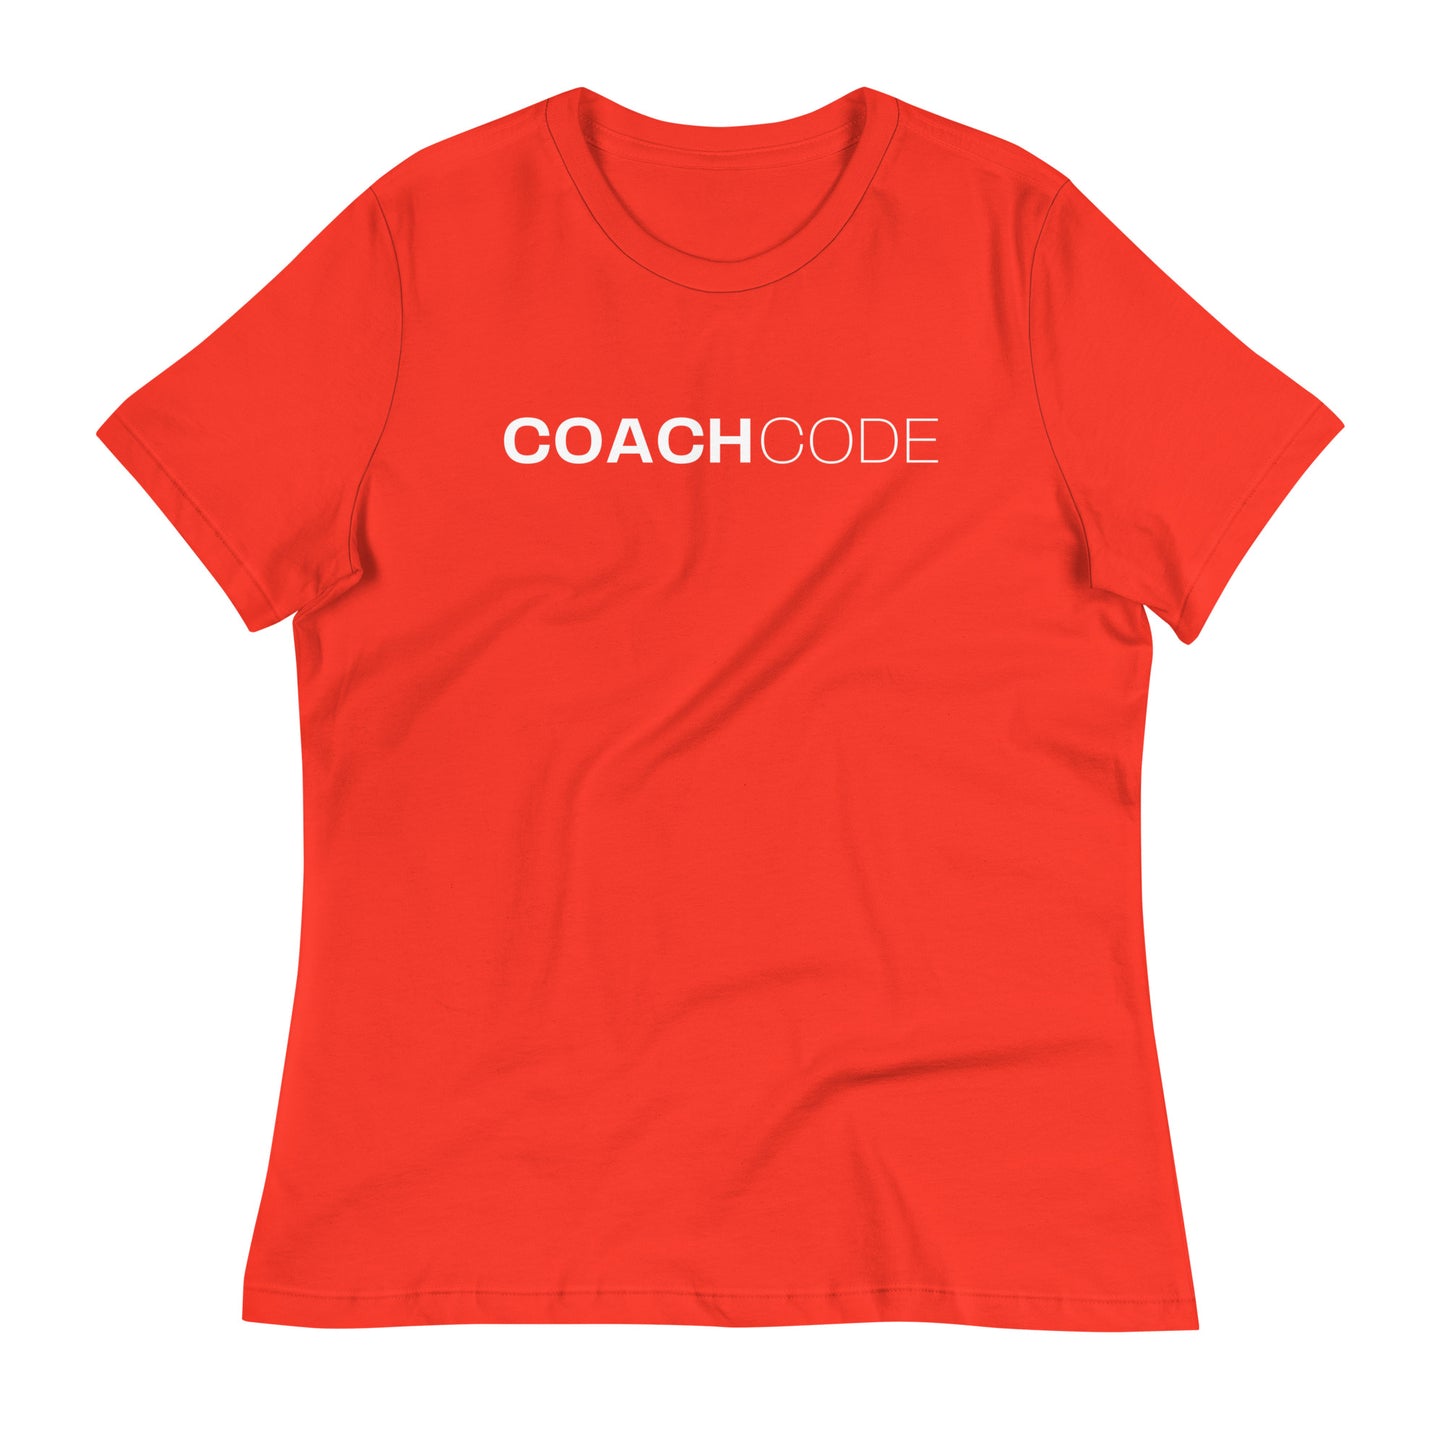 Coach Code White Logo Women's Relaxed T-Shirt